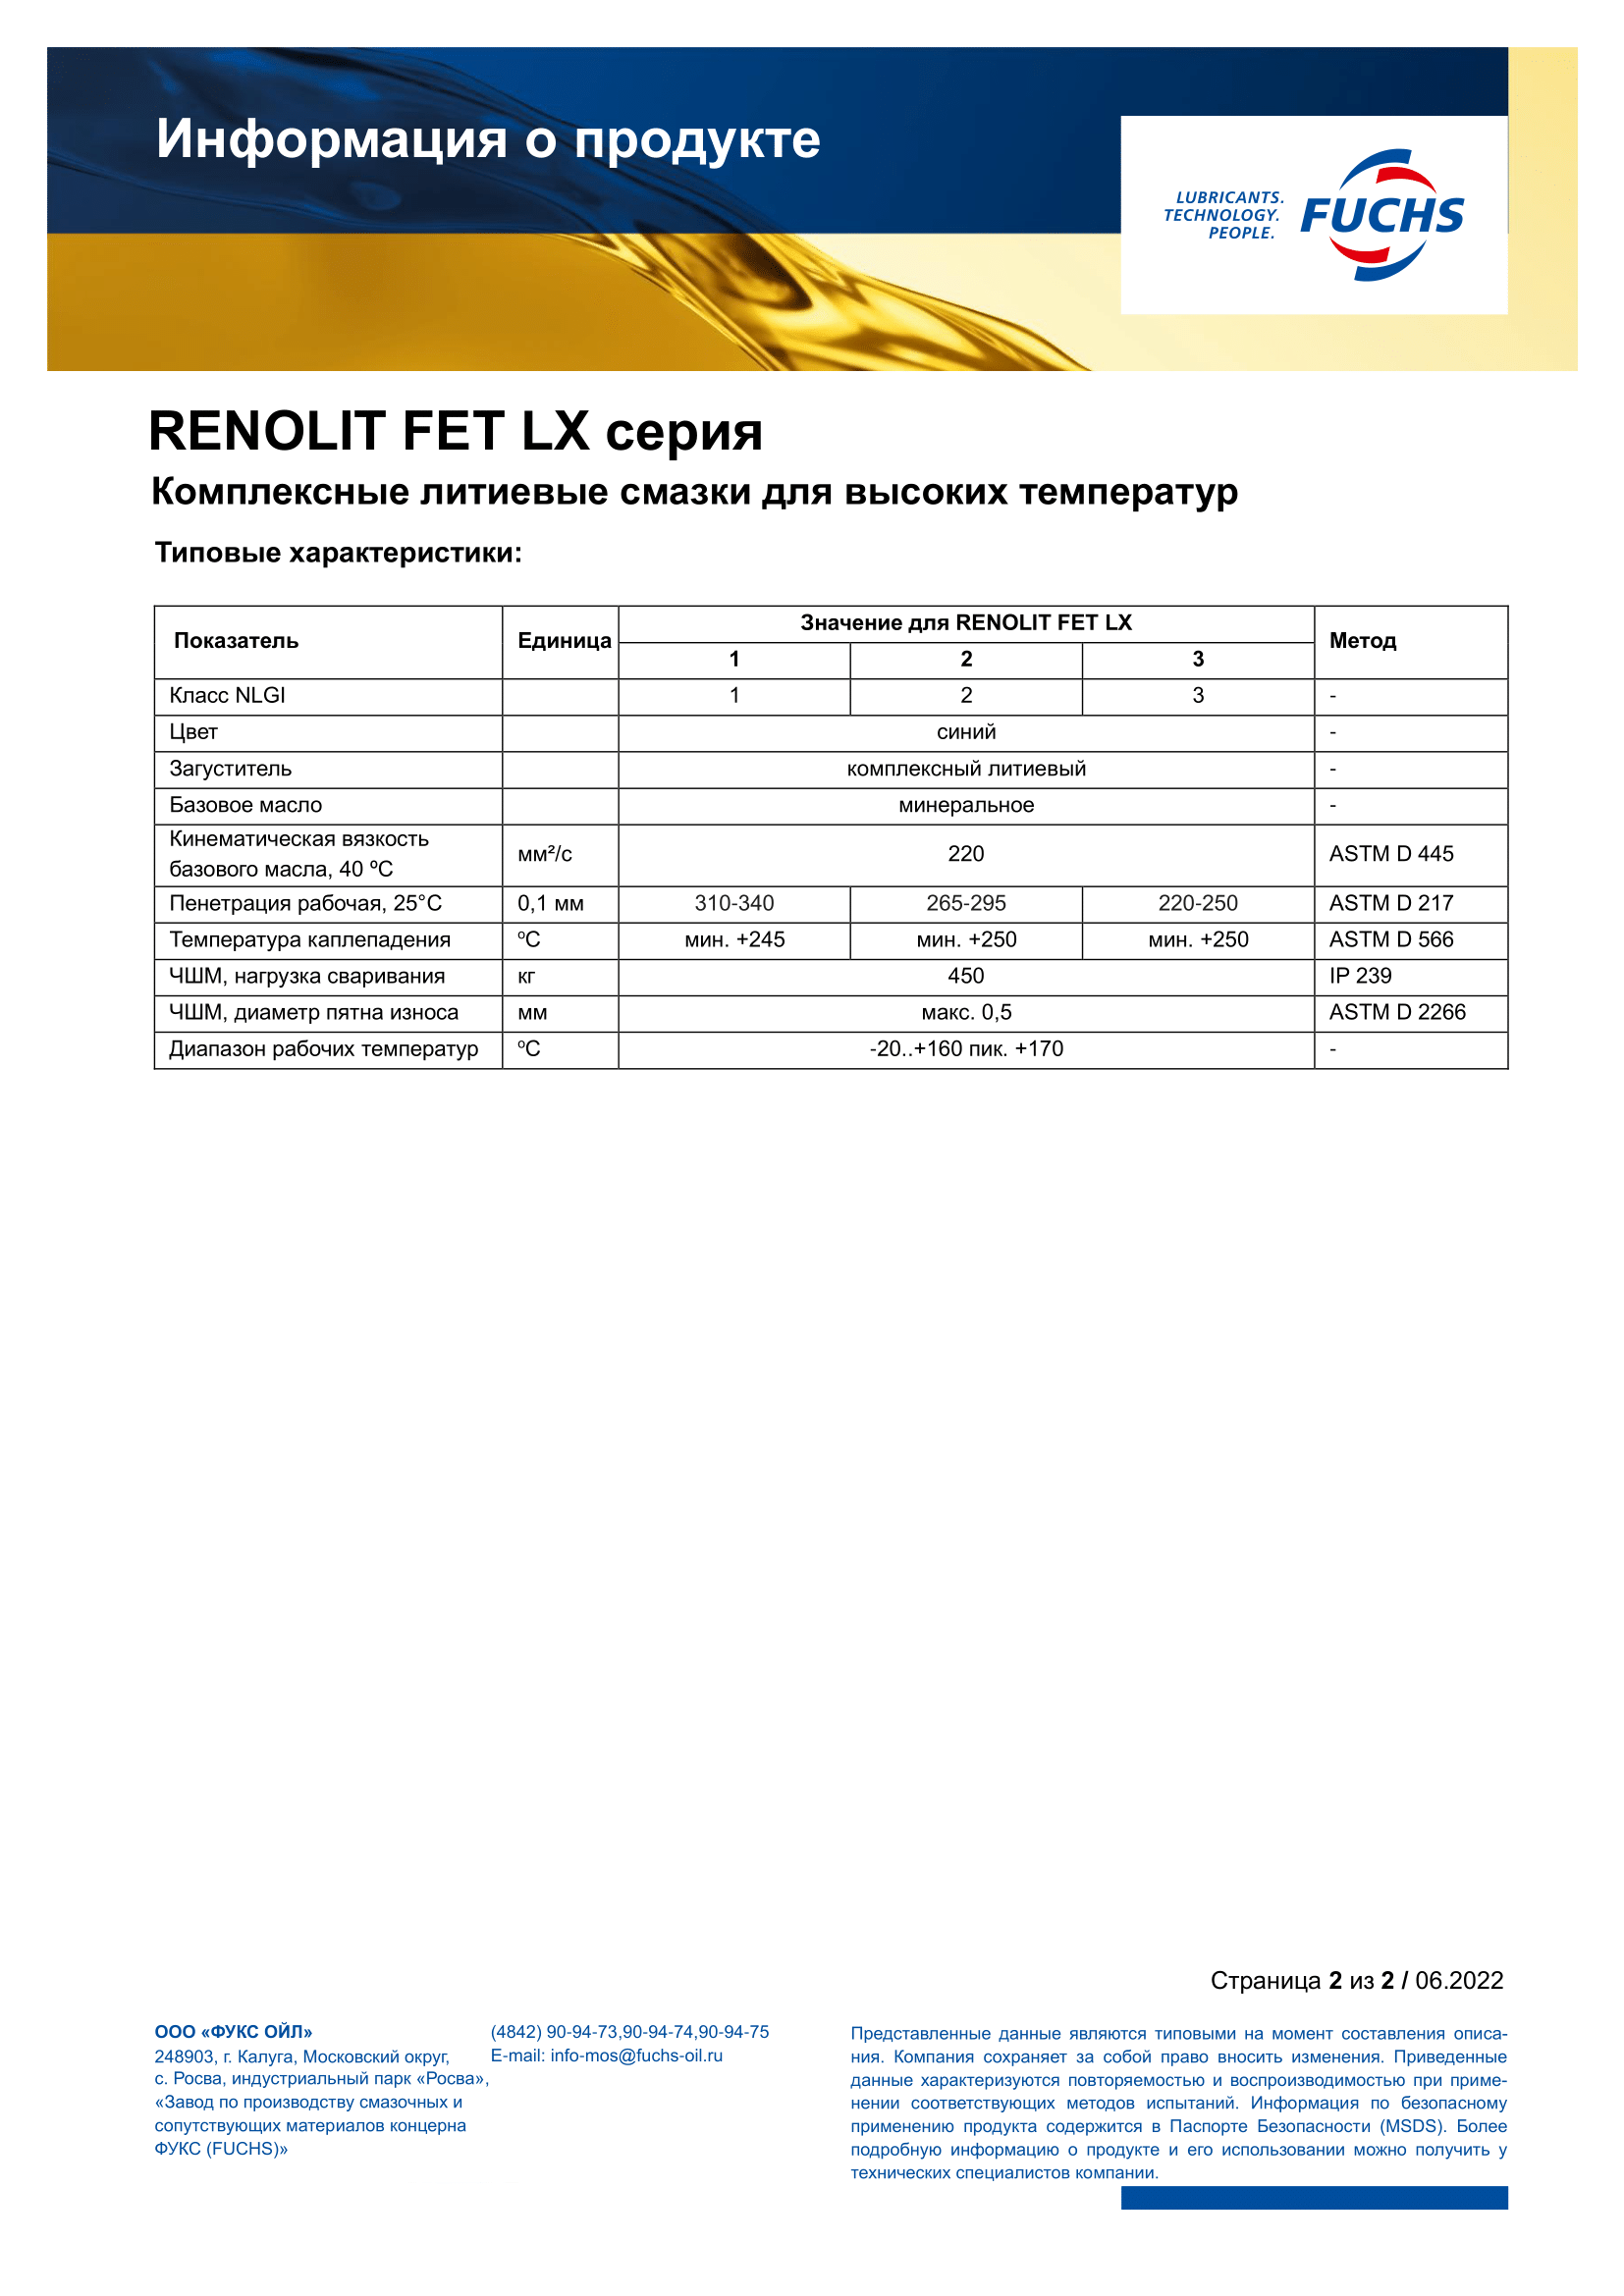 RENOLIT FET LX 1